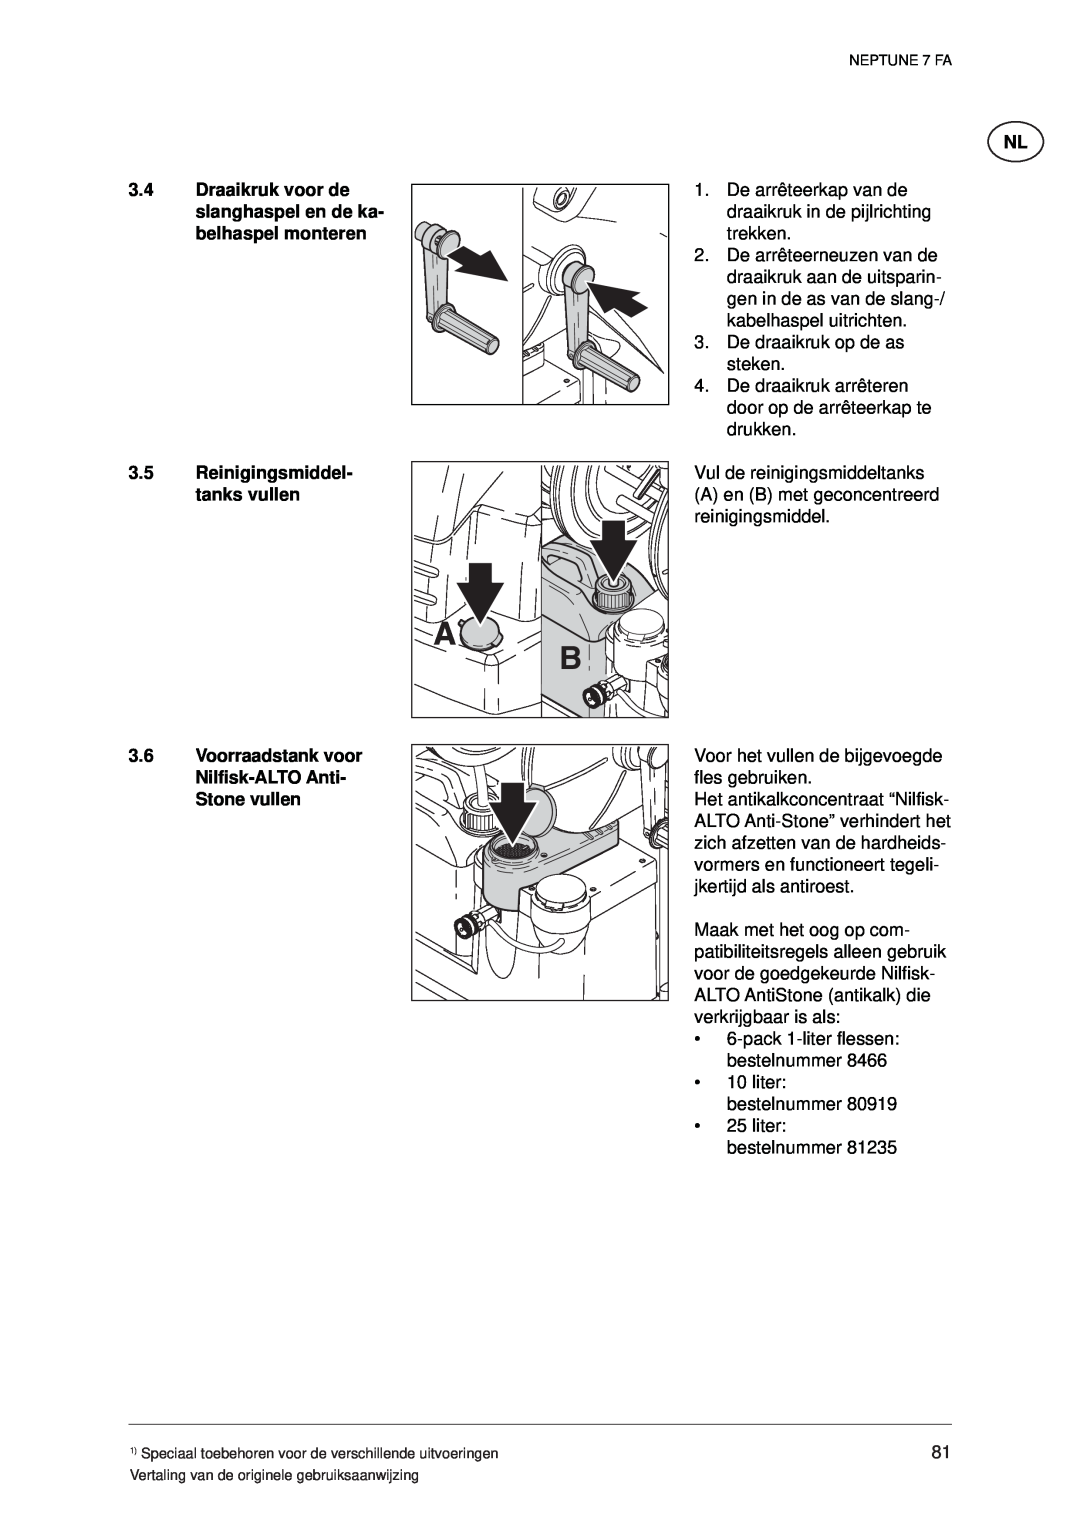 Nilfisk-ALTO 7 FA manual Draaikruk voor de slanghaspel en de ka- belhaspel monteren, Reinigingsmiddel- tanks vullen 